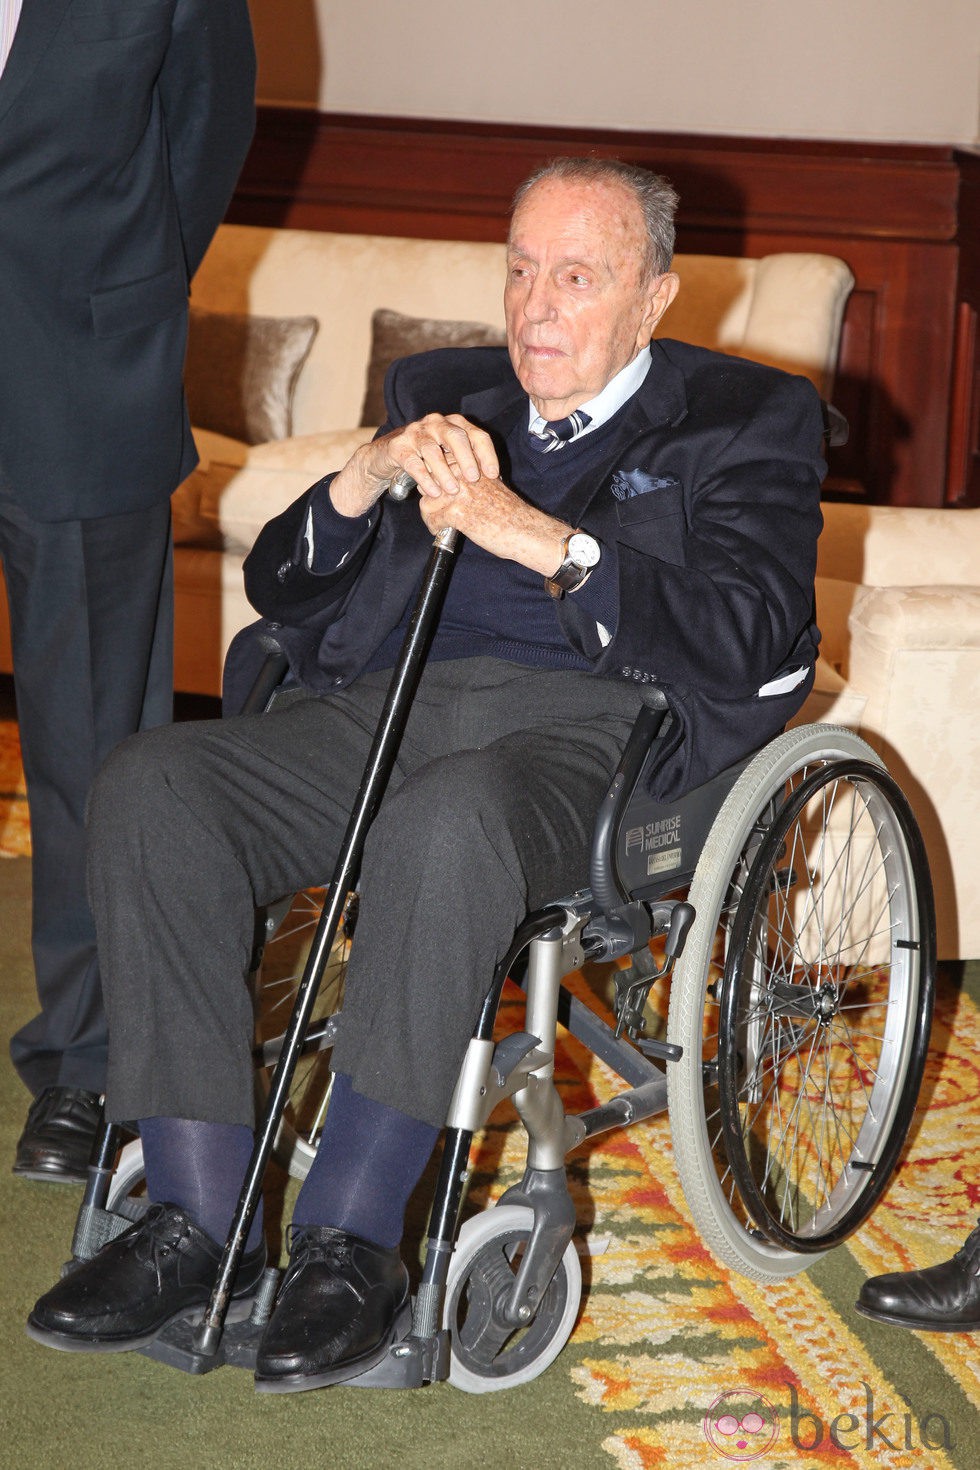 Manuel Fraga en silla de ruedas